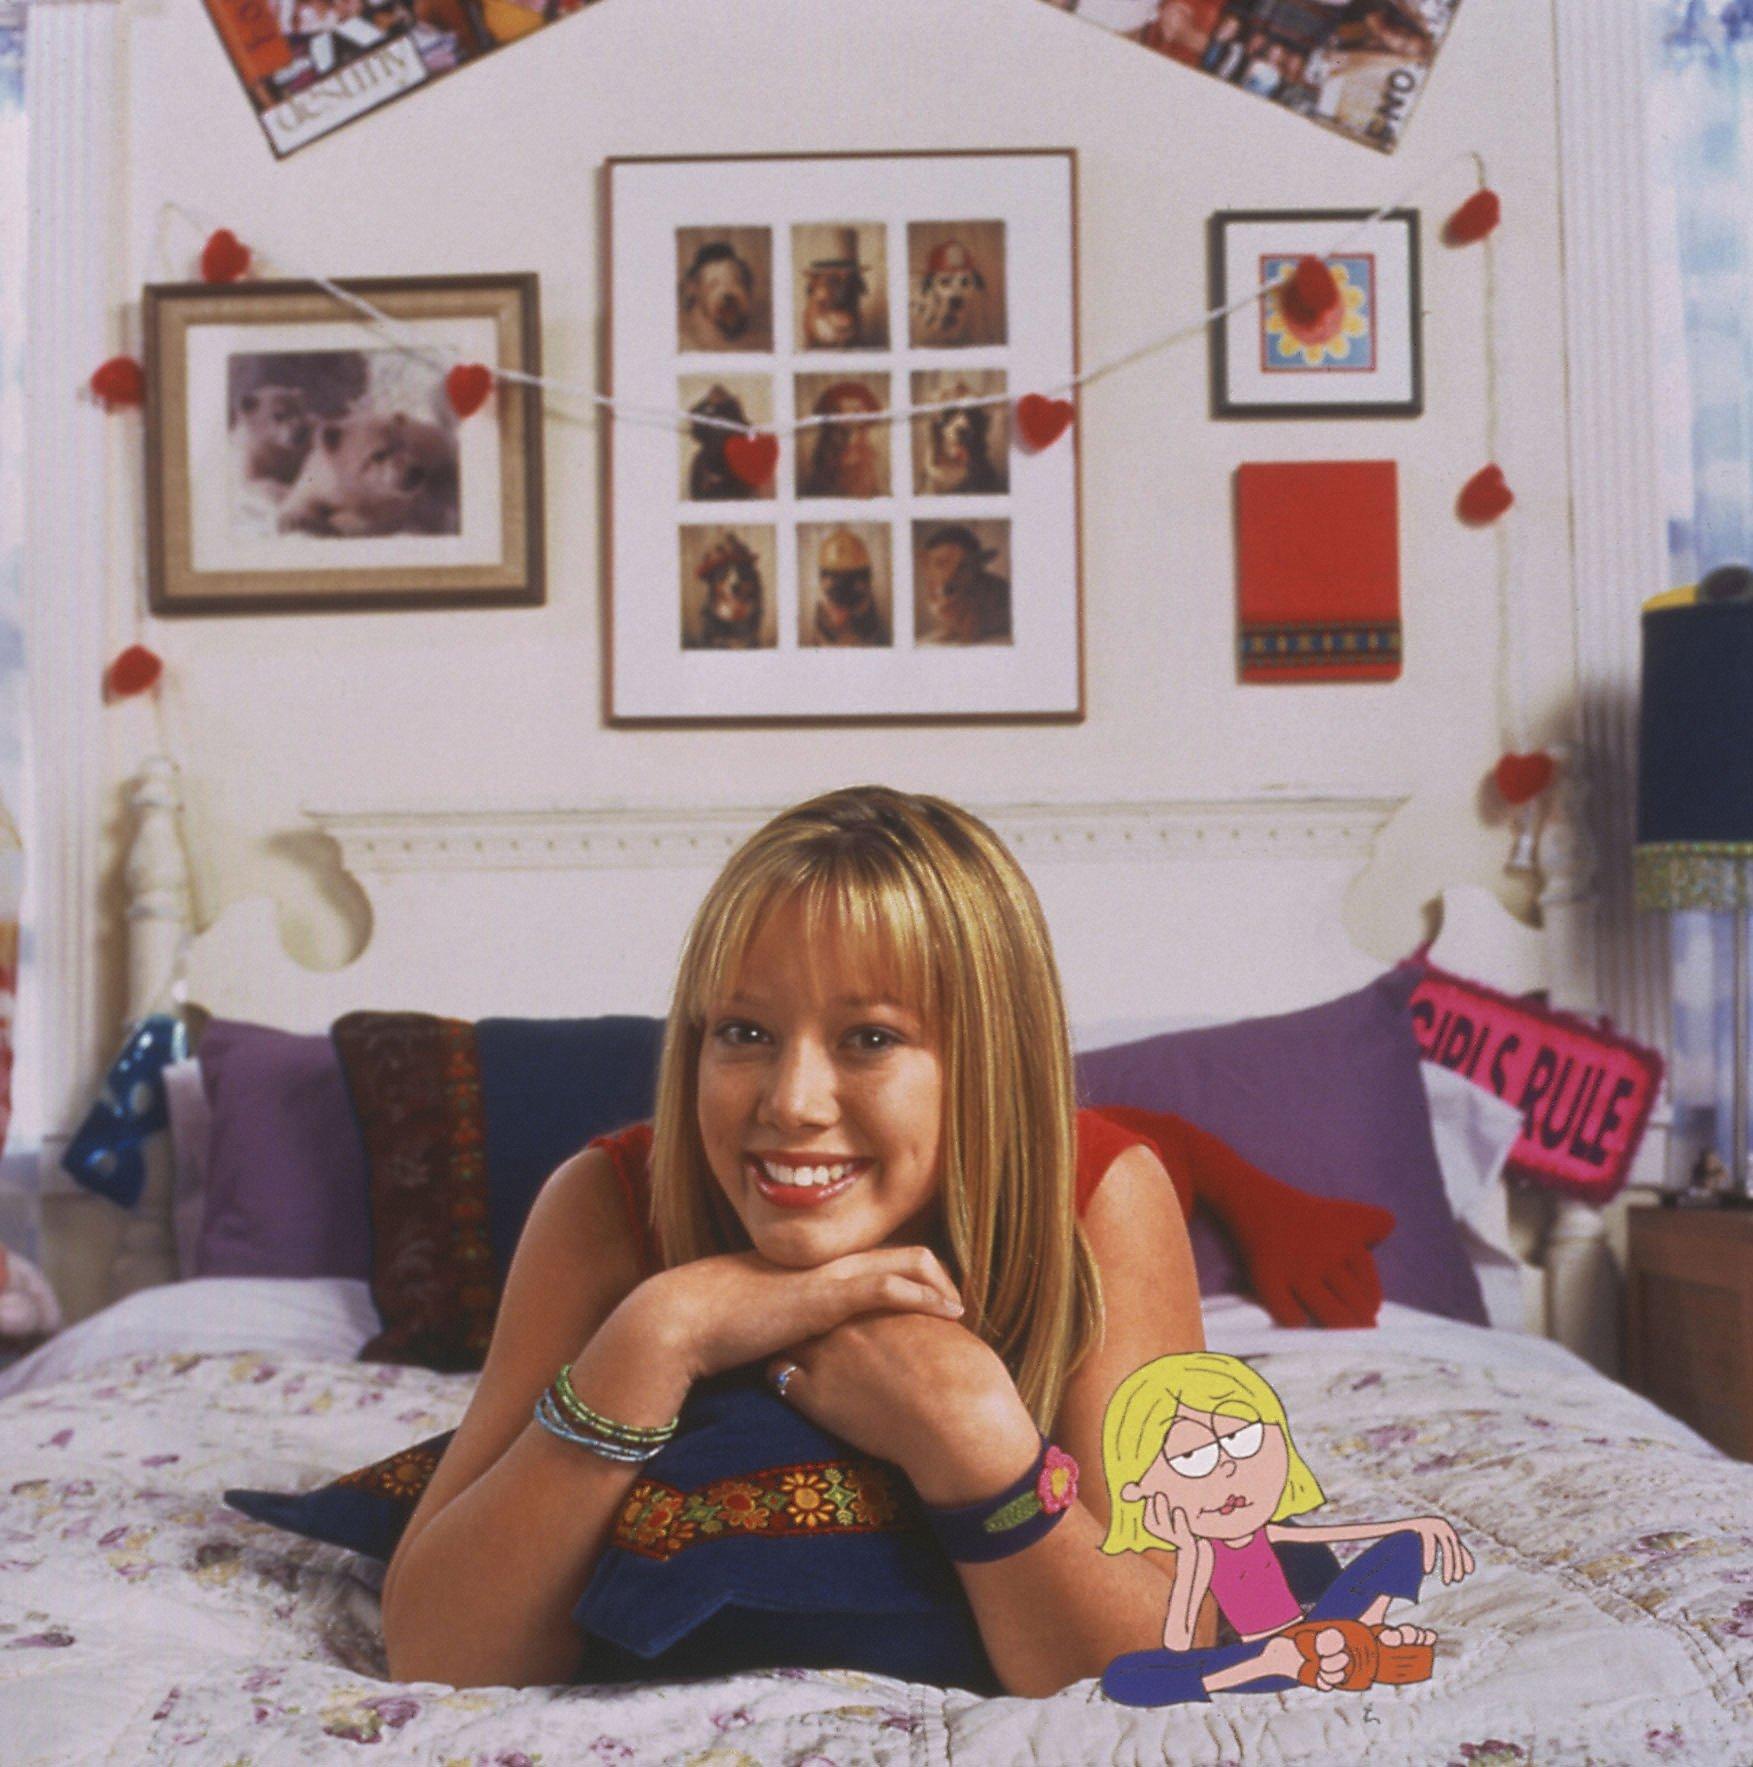 Lizzie McGuire. 2001-2004. Disney Channel Original Series.